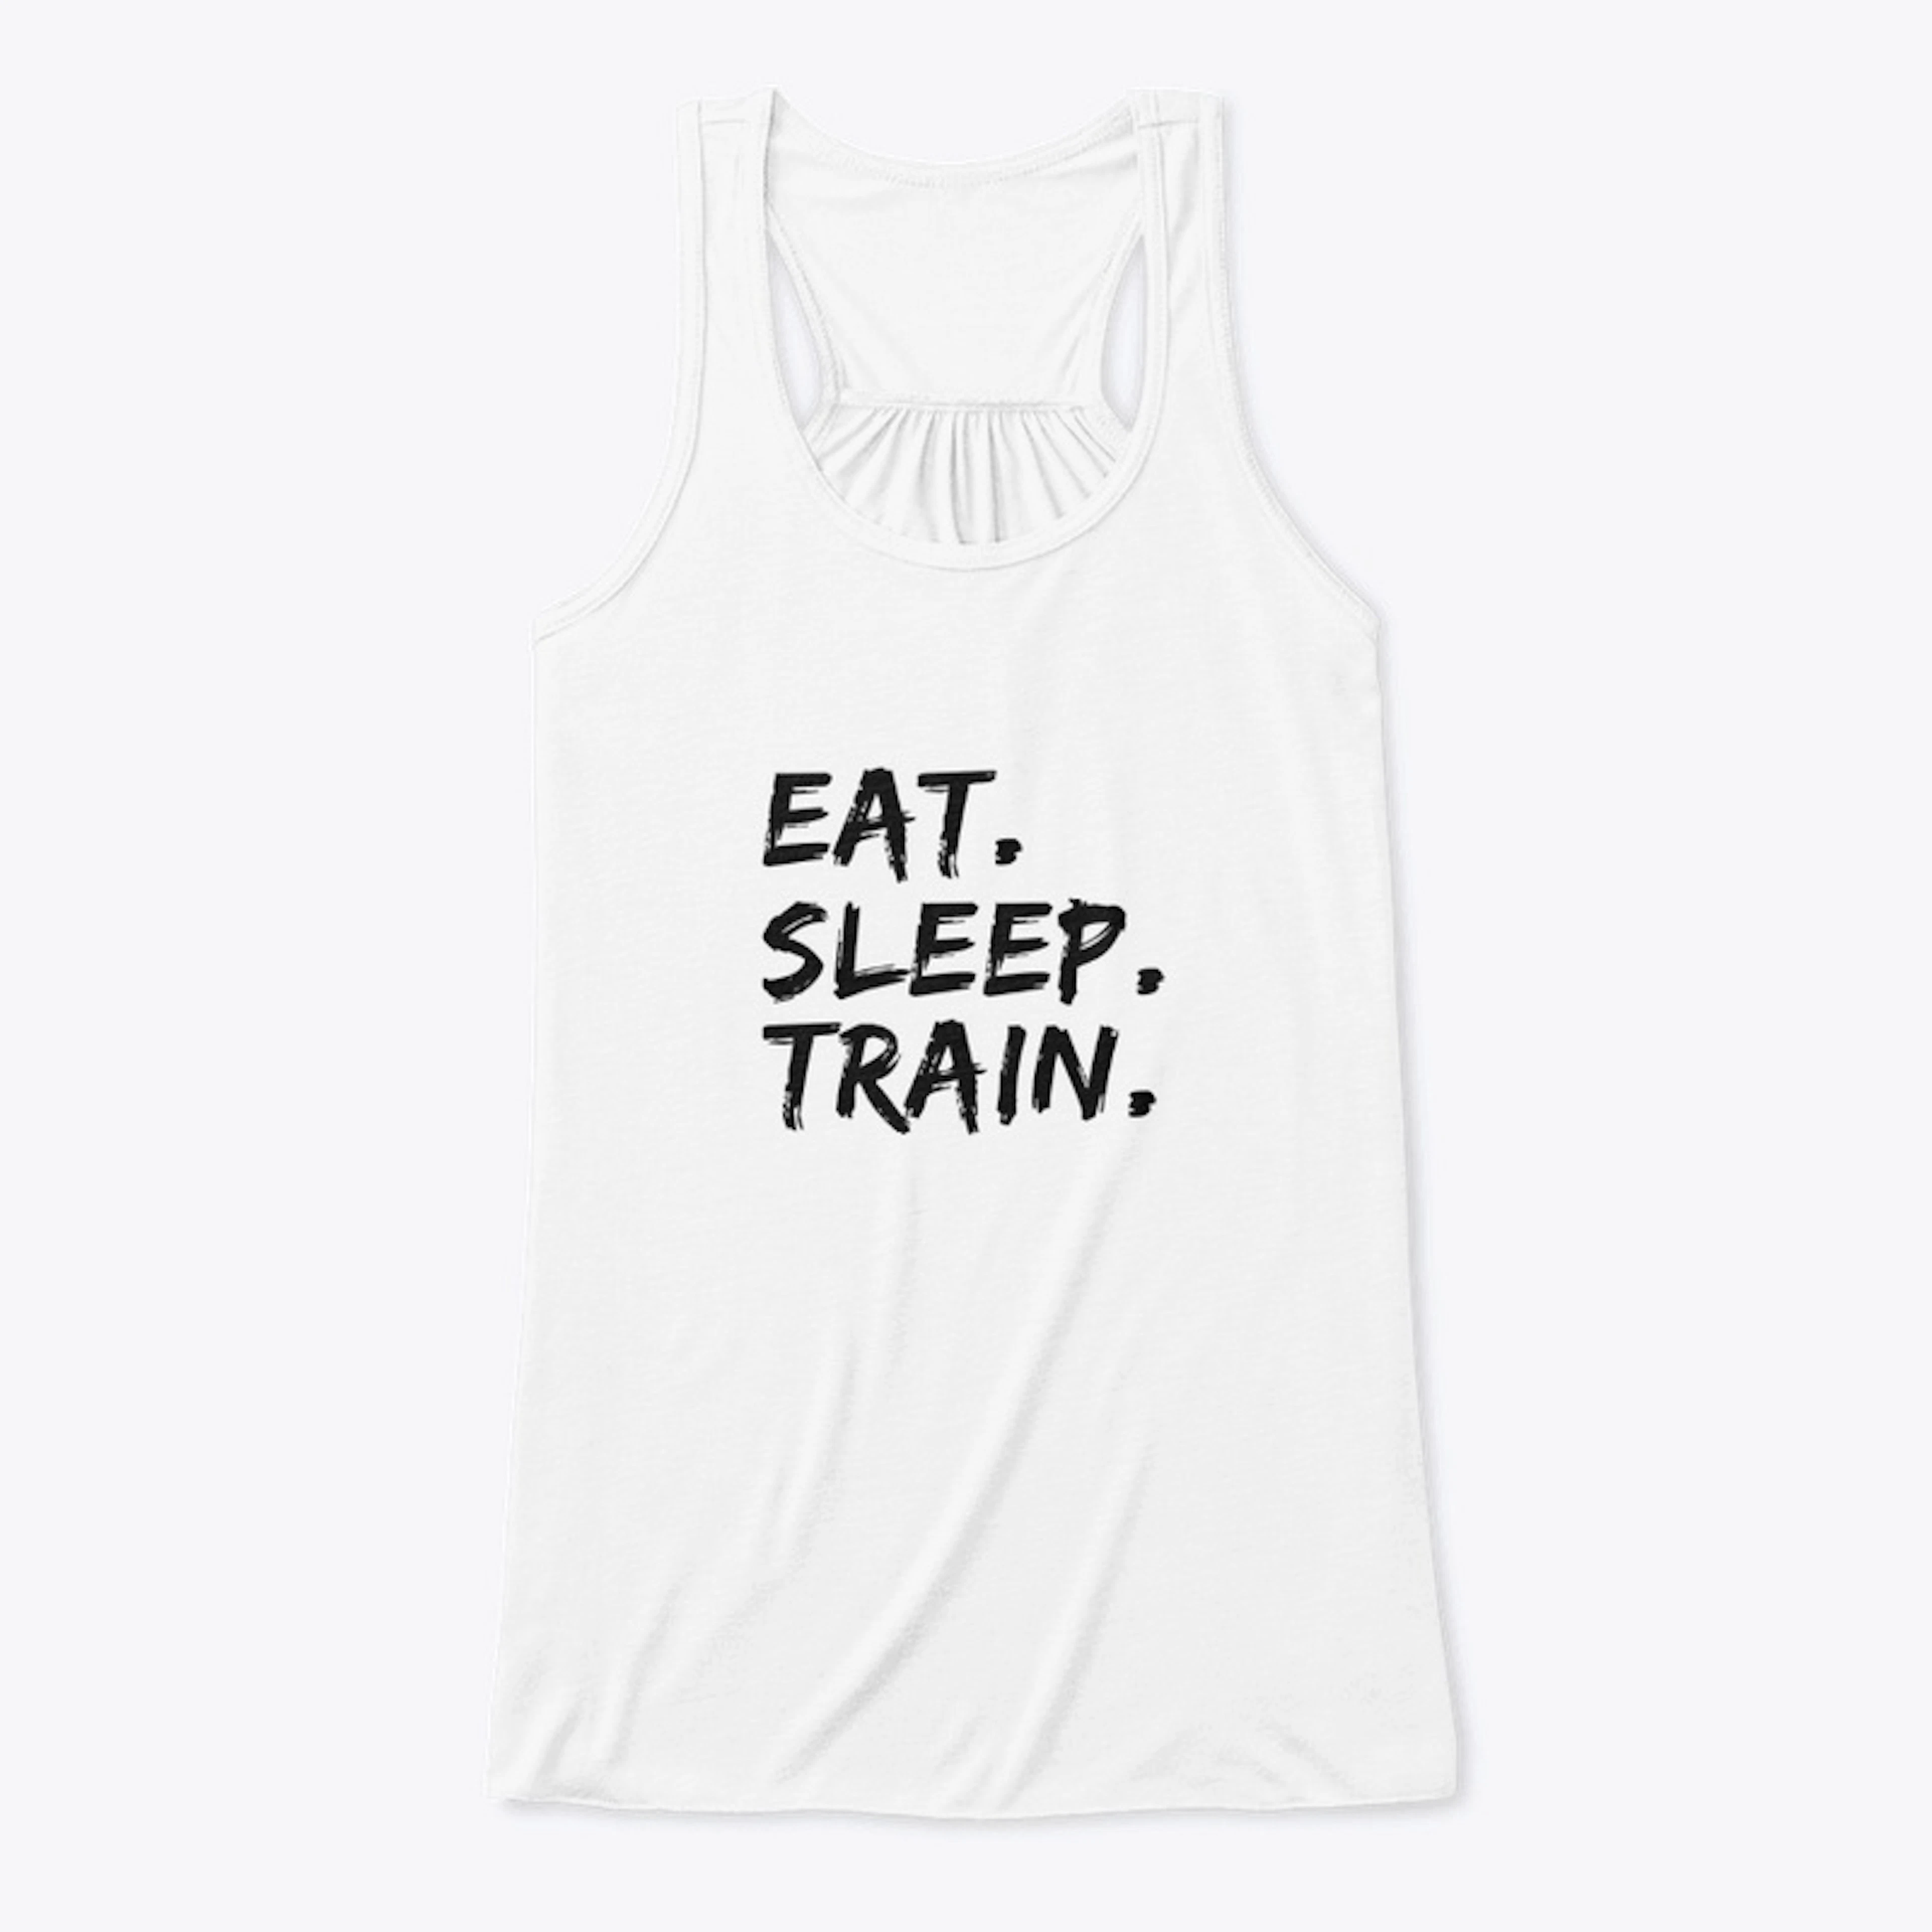 Eat. Sleep. Train.